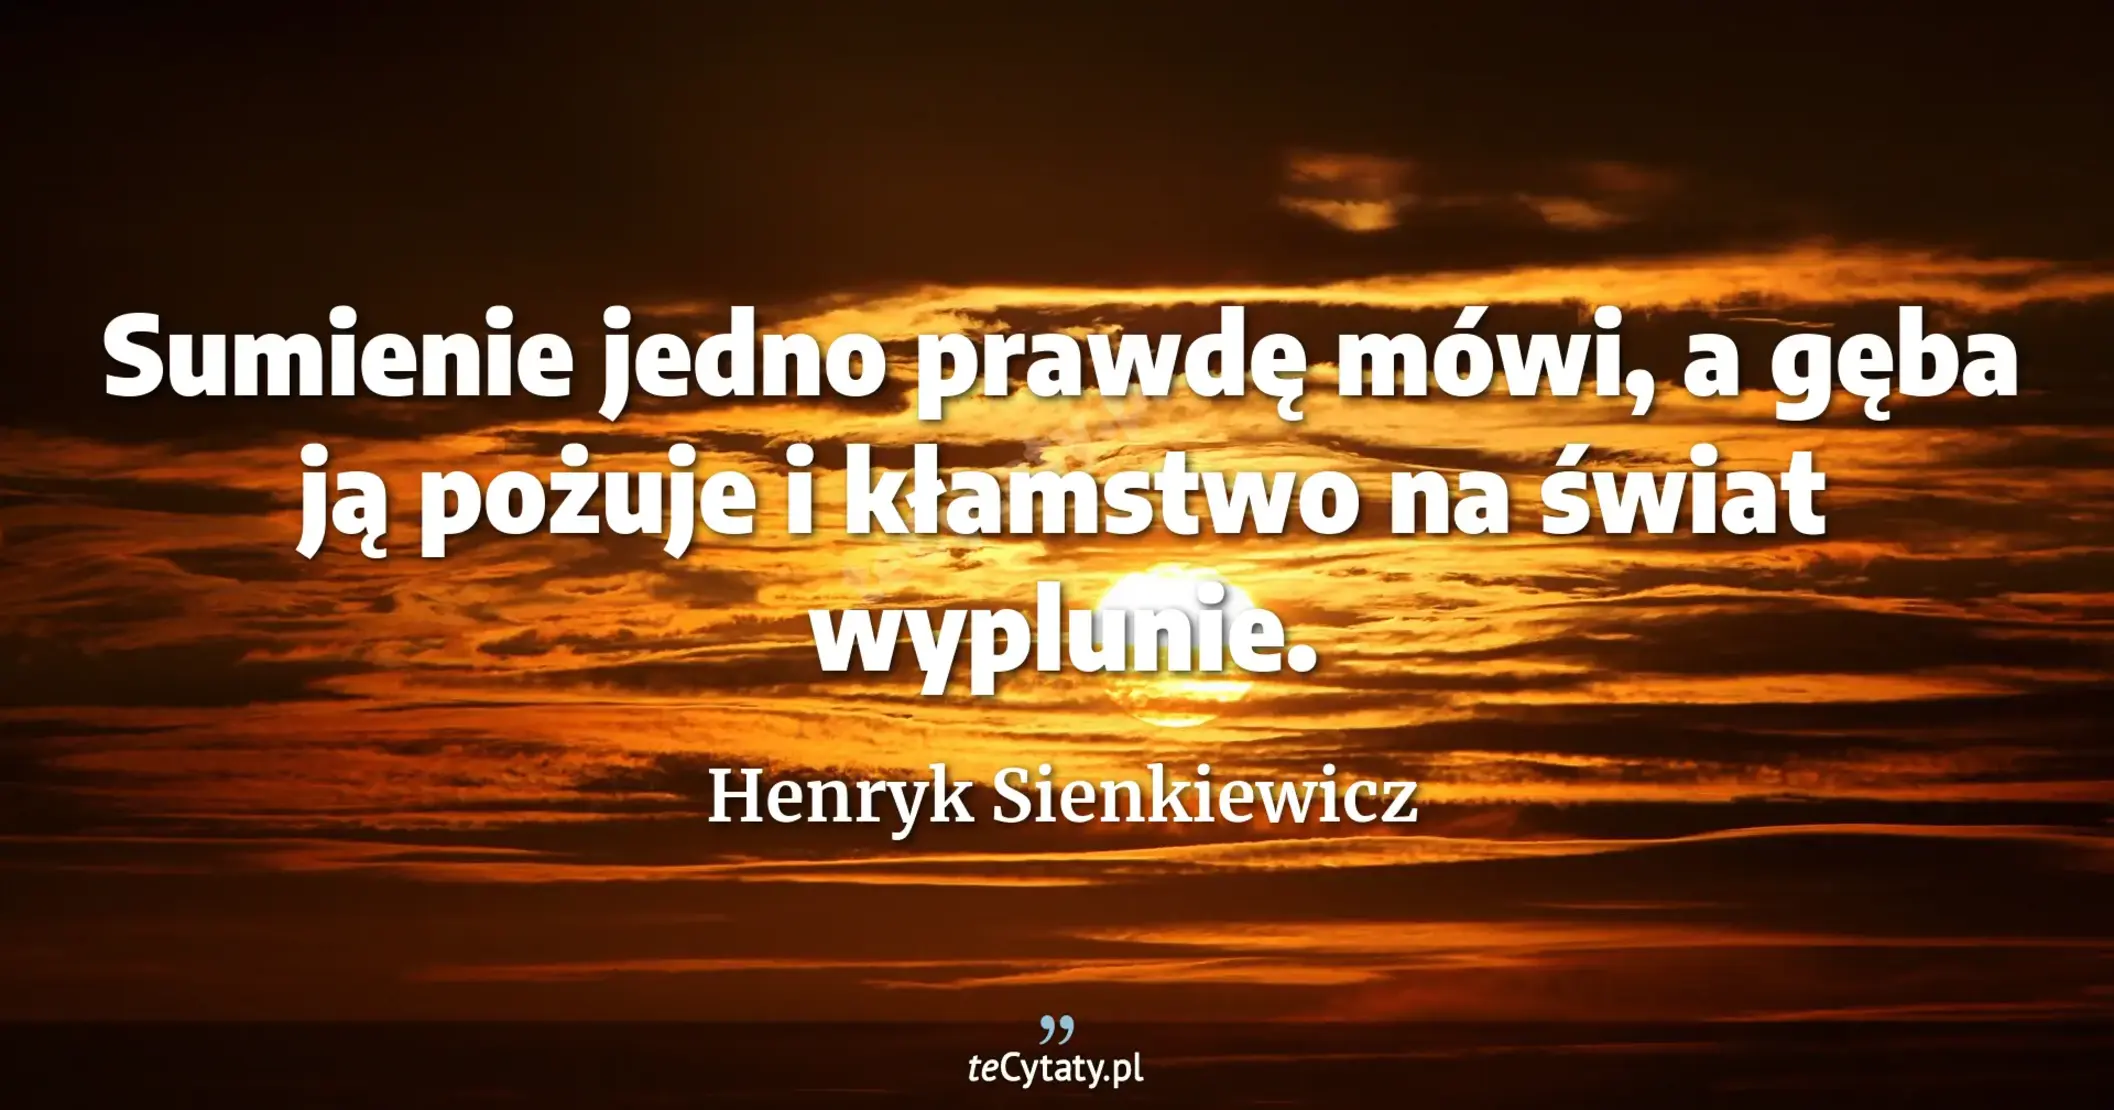 Sumienie jedno prawdę mówi, a gęba ją pożuje i kłamstwo na świat wyplunie. - Henryk Sienkiewicz